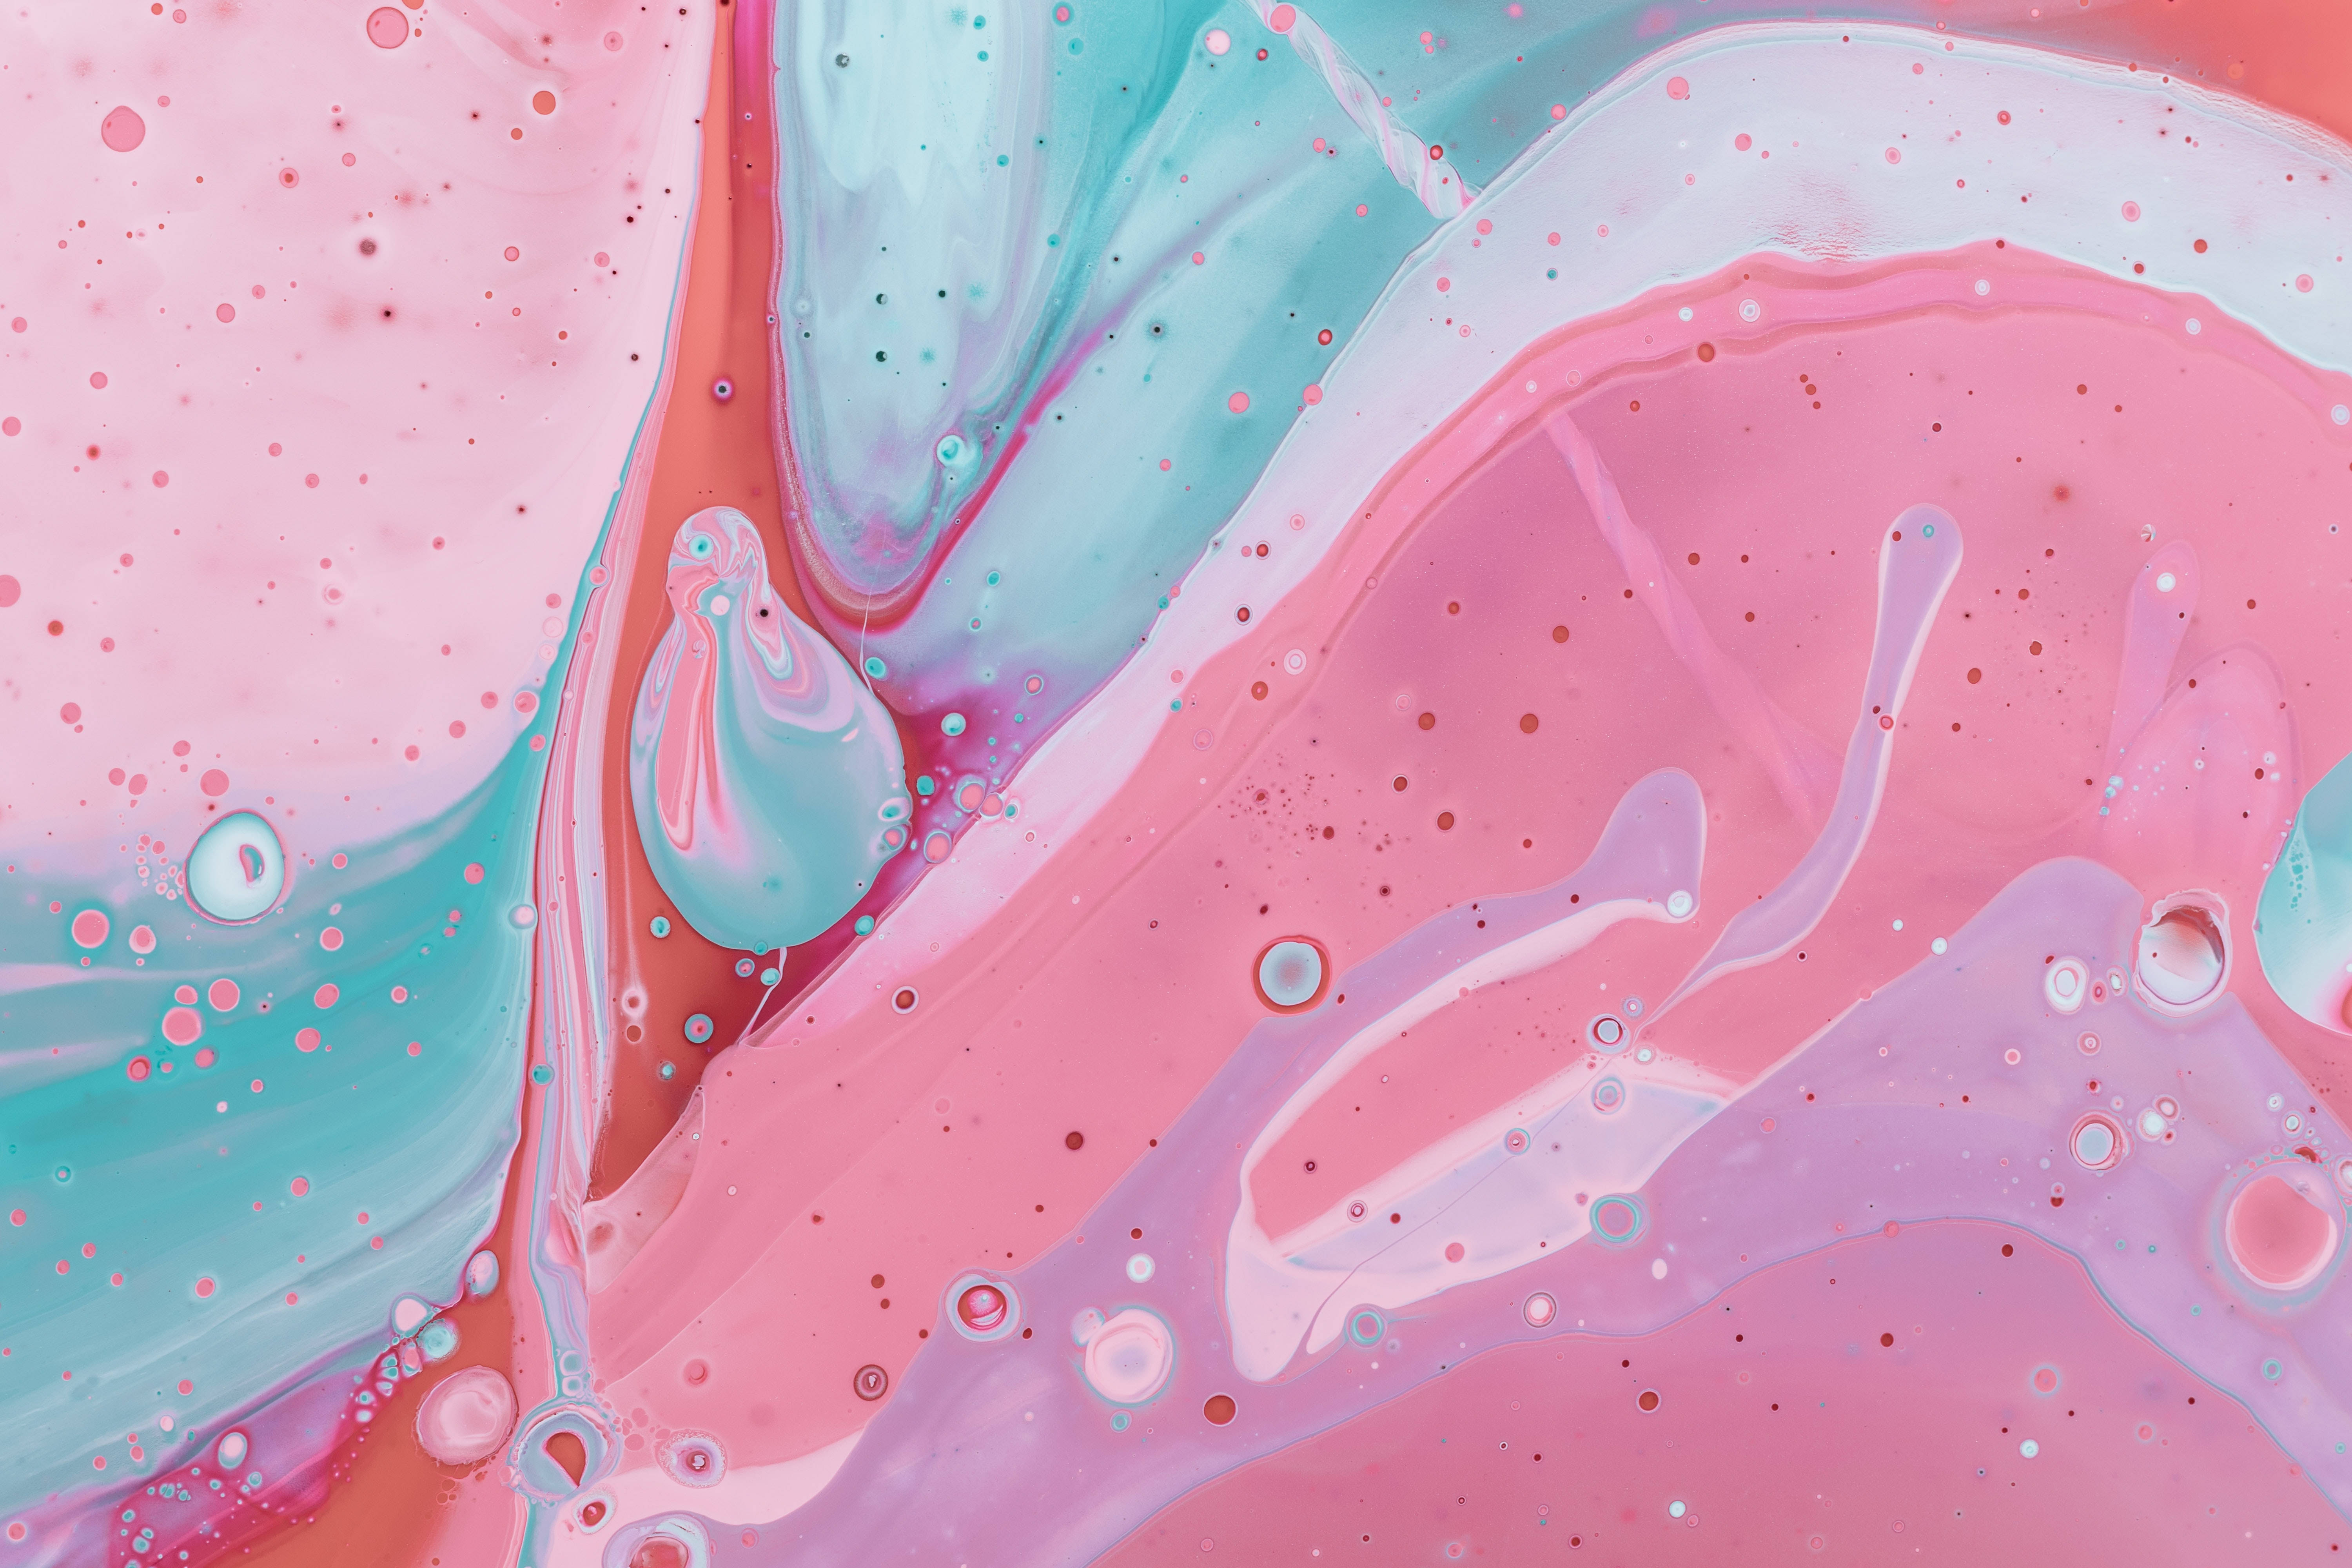 Striking 4K Image of Pink Paint Splashing on Marble Surface. Wallpaper